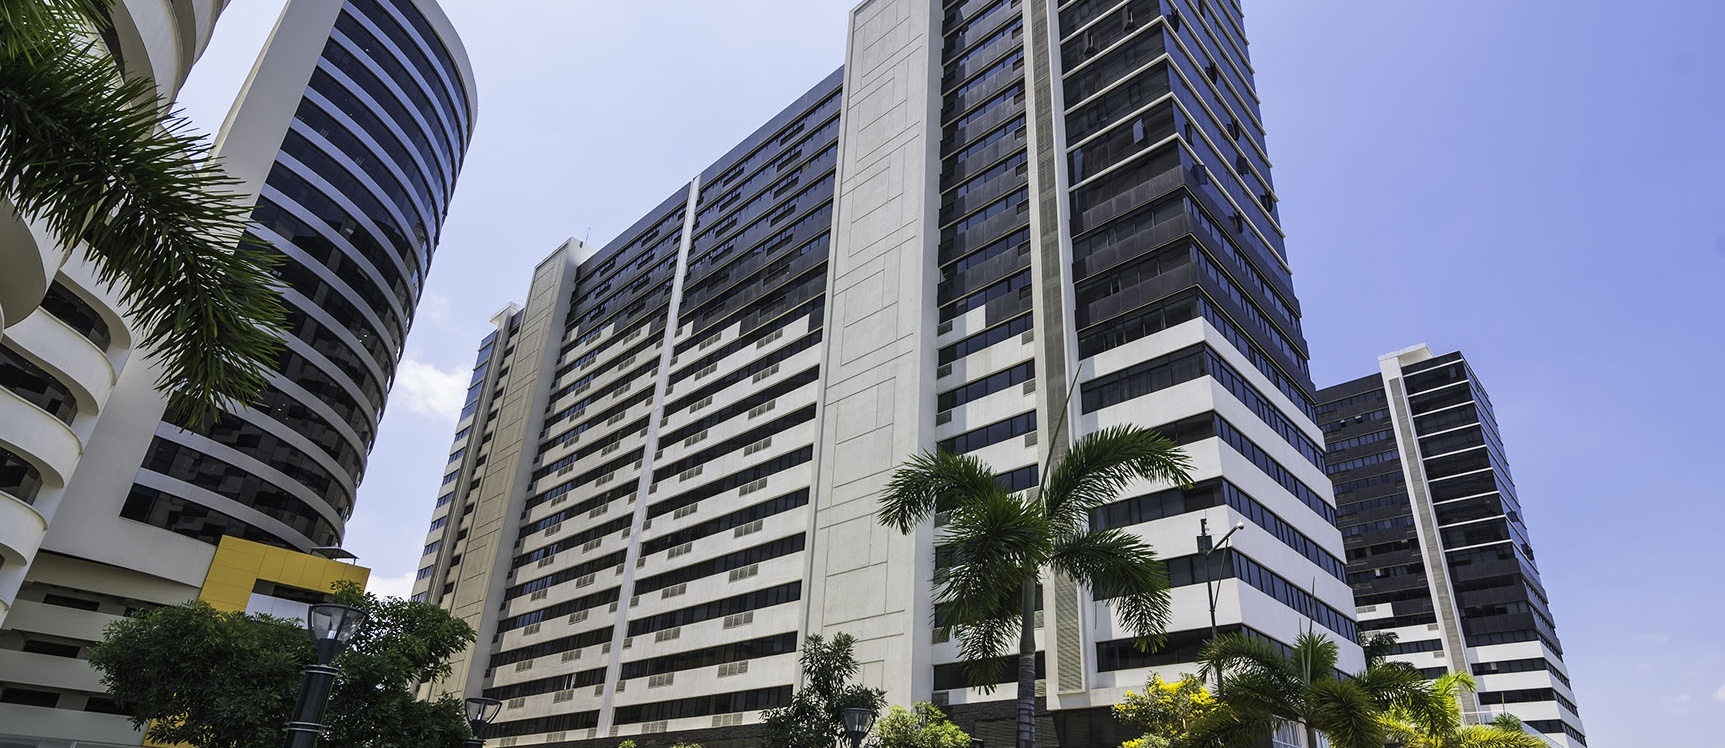 GeoBienes - Departamento en alquiler Edificio Bellini IV, Puerto Santa Ana, Guayaquil  - Plusvalia Guayaquil Casas de venta y alquiler Inmobiliaria Ecuador